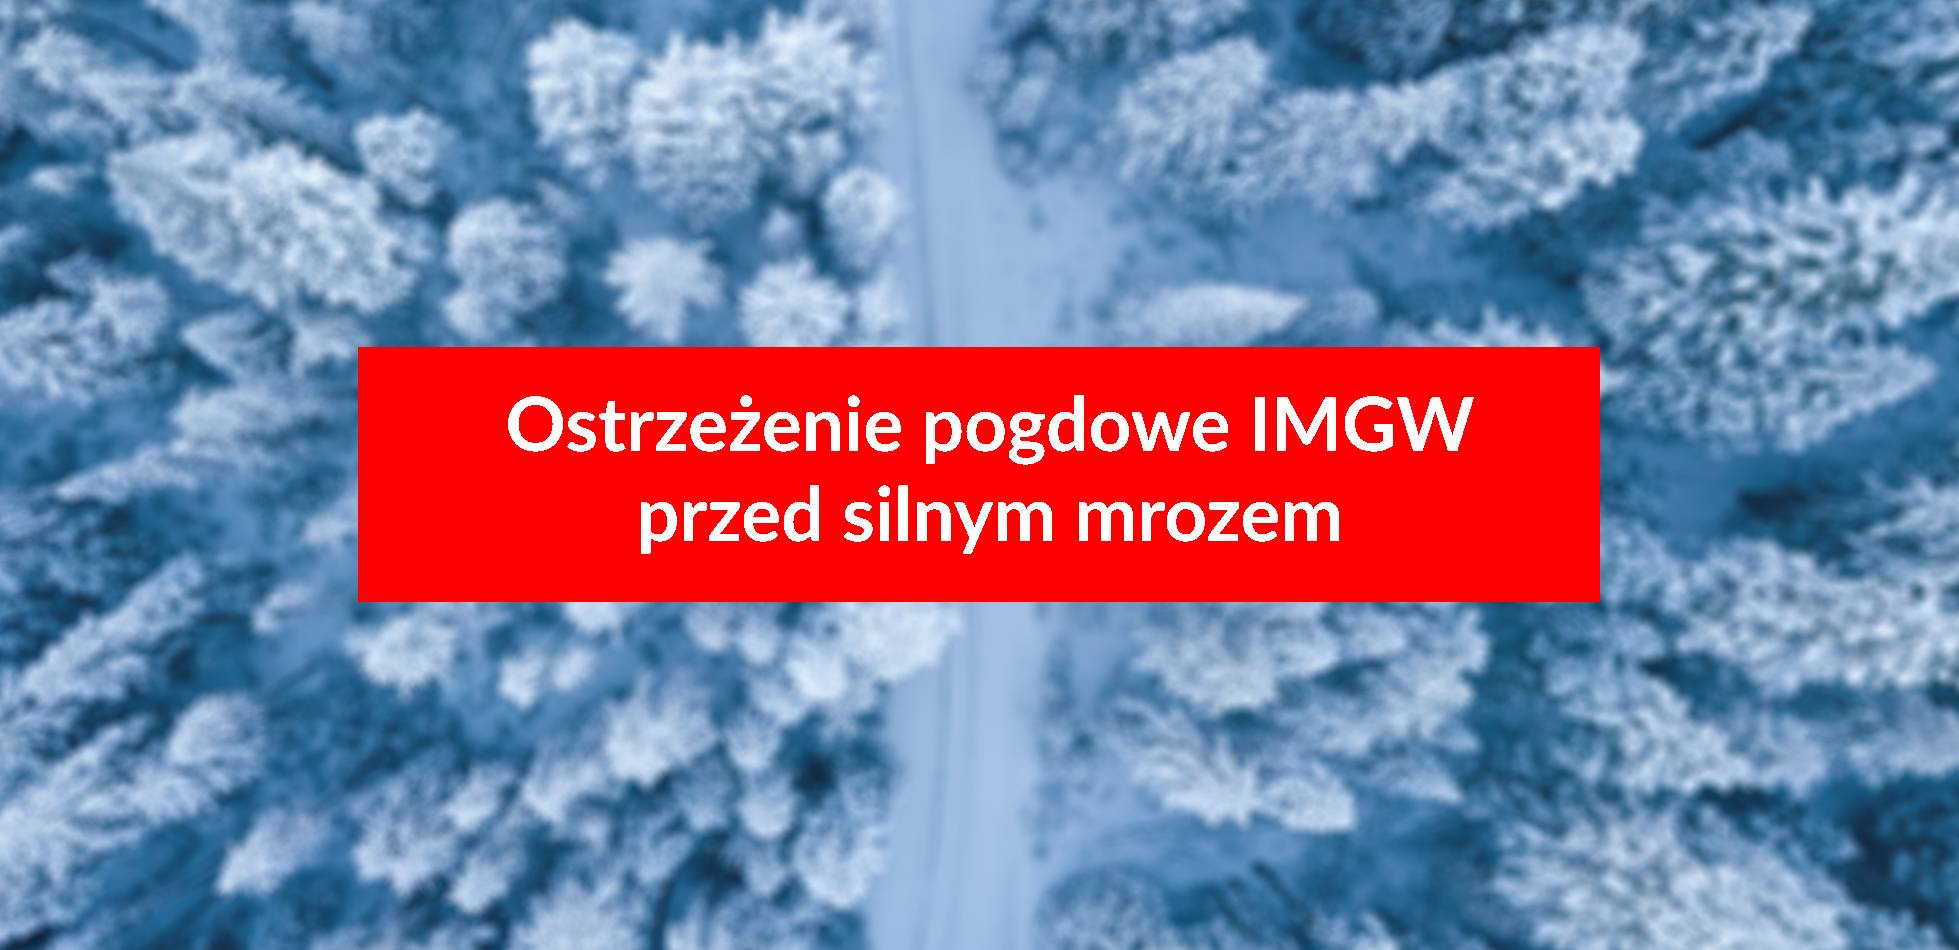 Ostrzeżenie pogodowe IMGW przed silnym mrozem dla północnej Polski